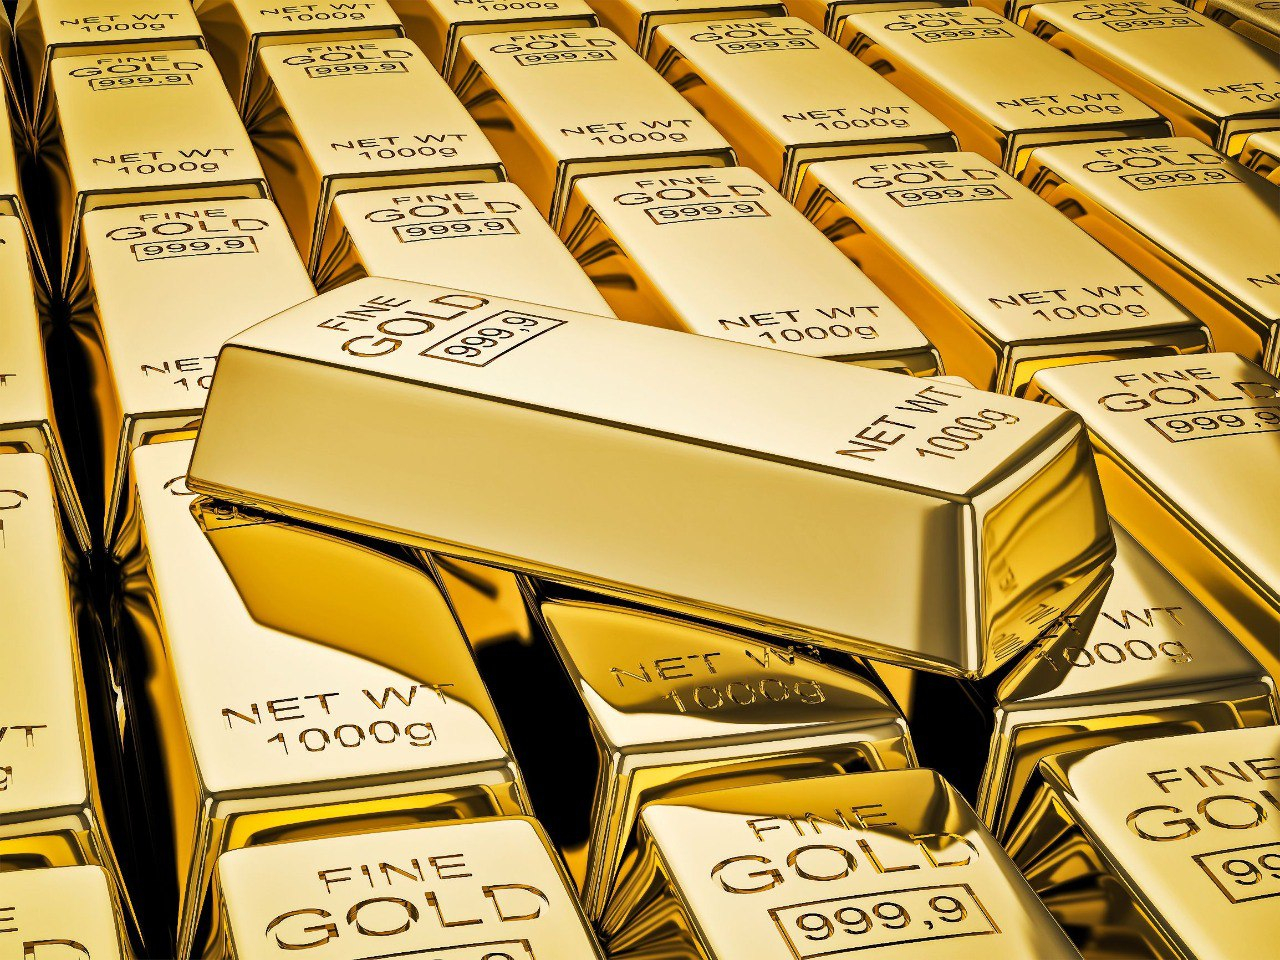 В этом году Госнефтефонд закупил около 3 тонн золота